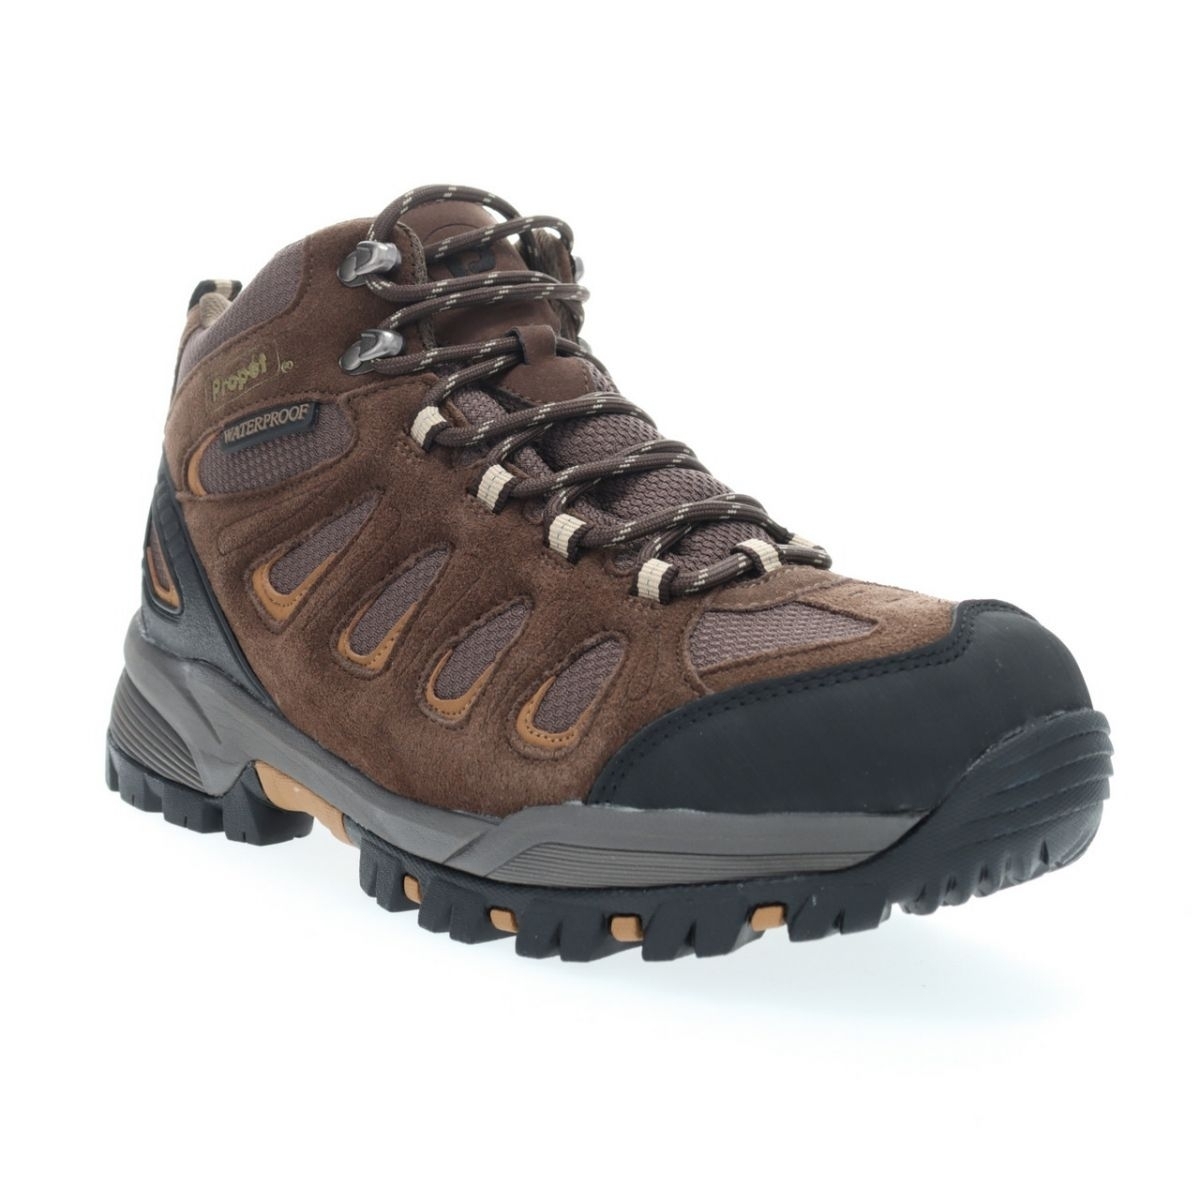 Propet Men's Ridge Walker Hiking Boot Brown - M3599BR 8 XX US Men BROWN - BROWN, 14 WIDE